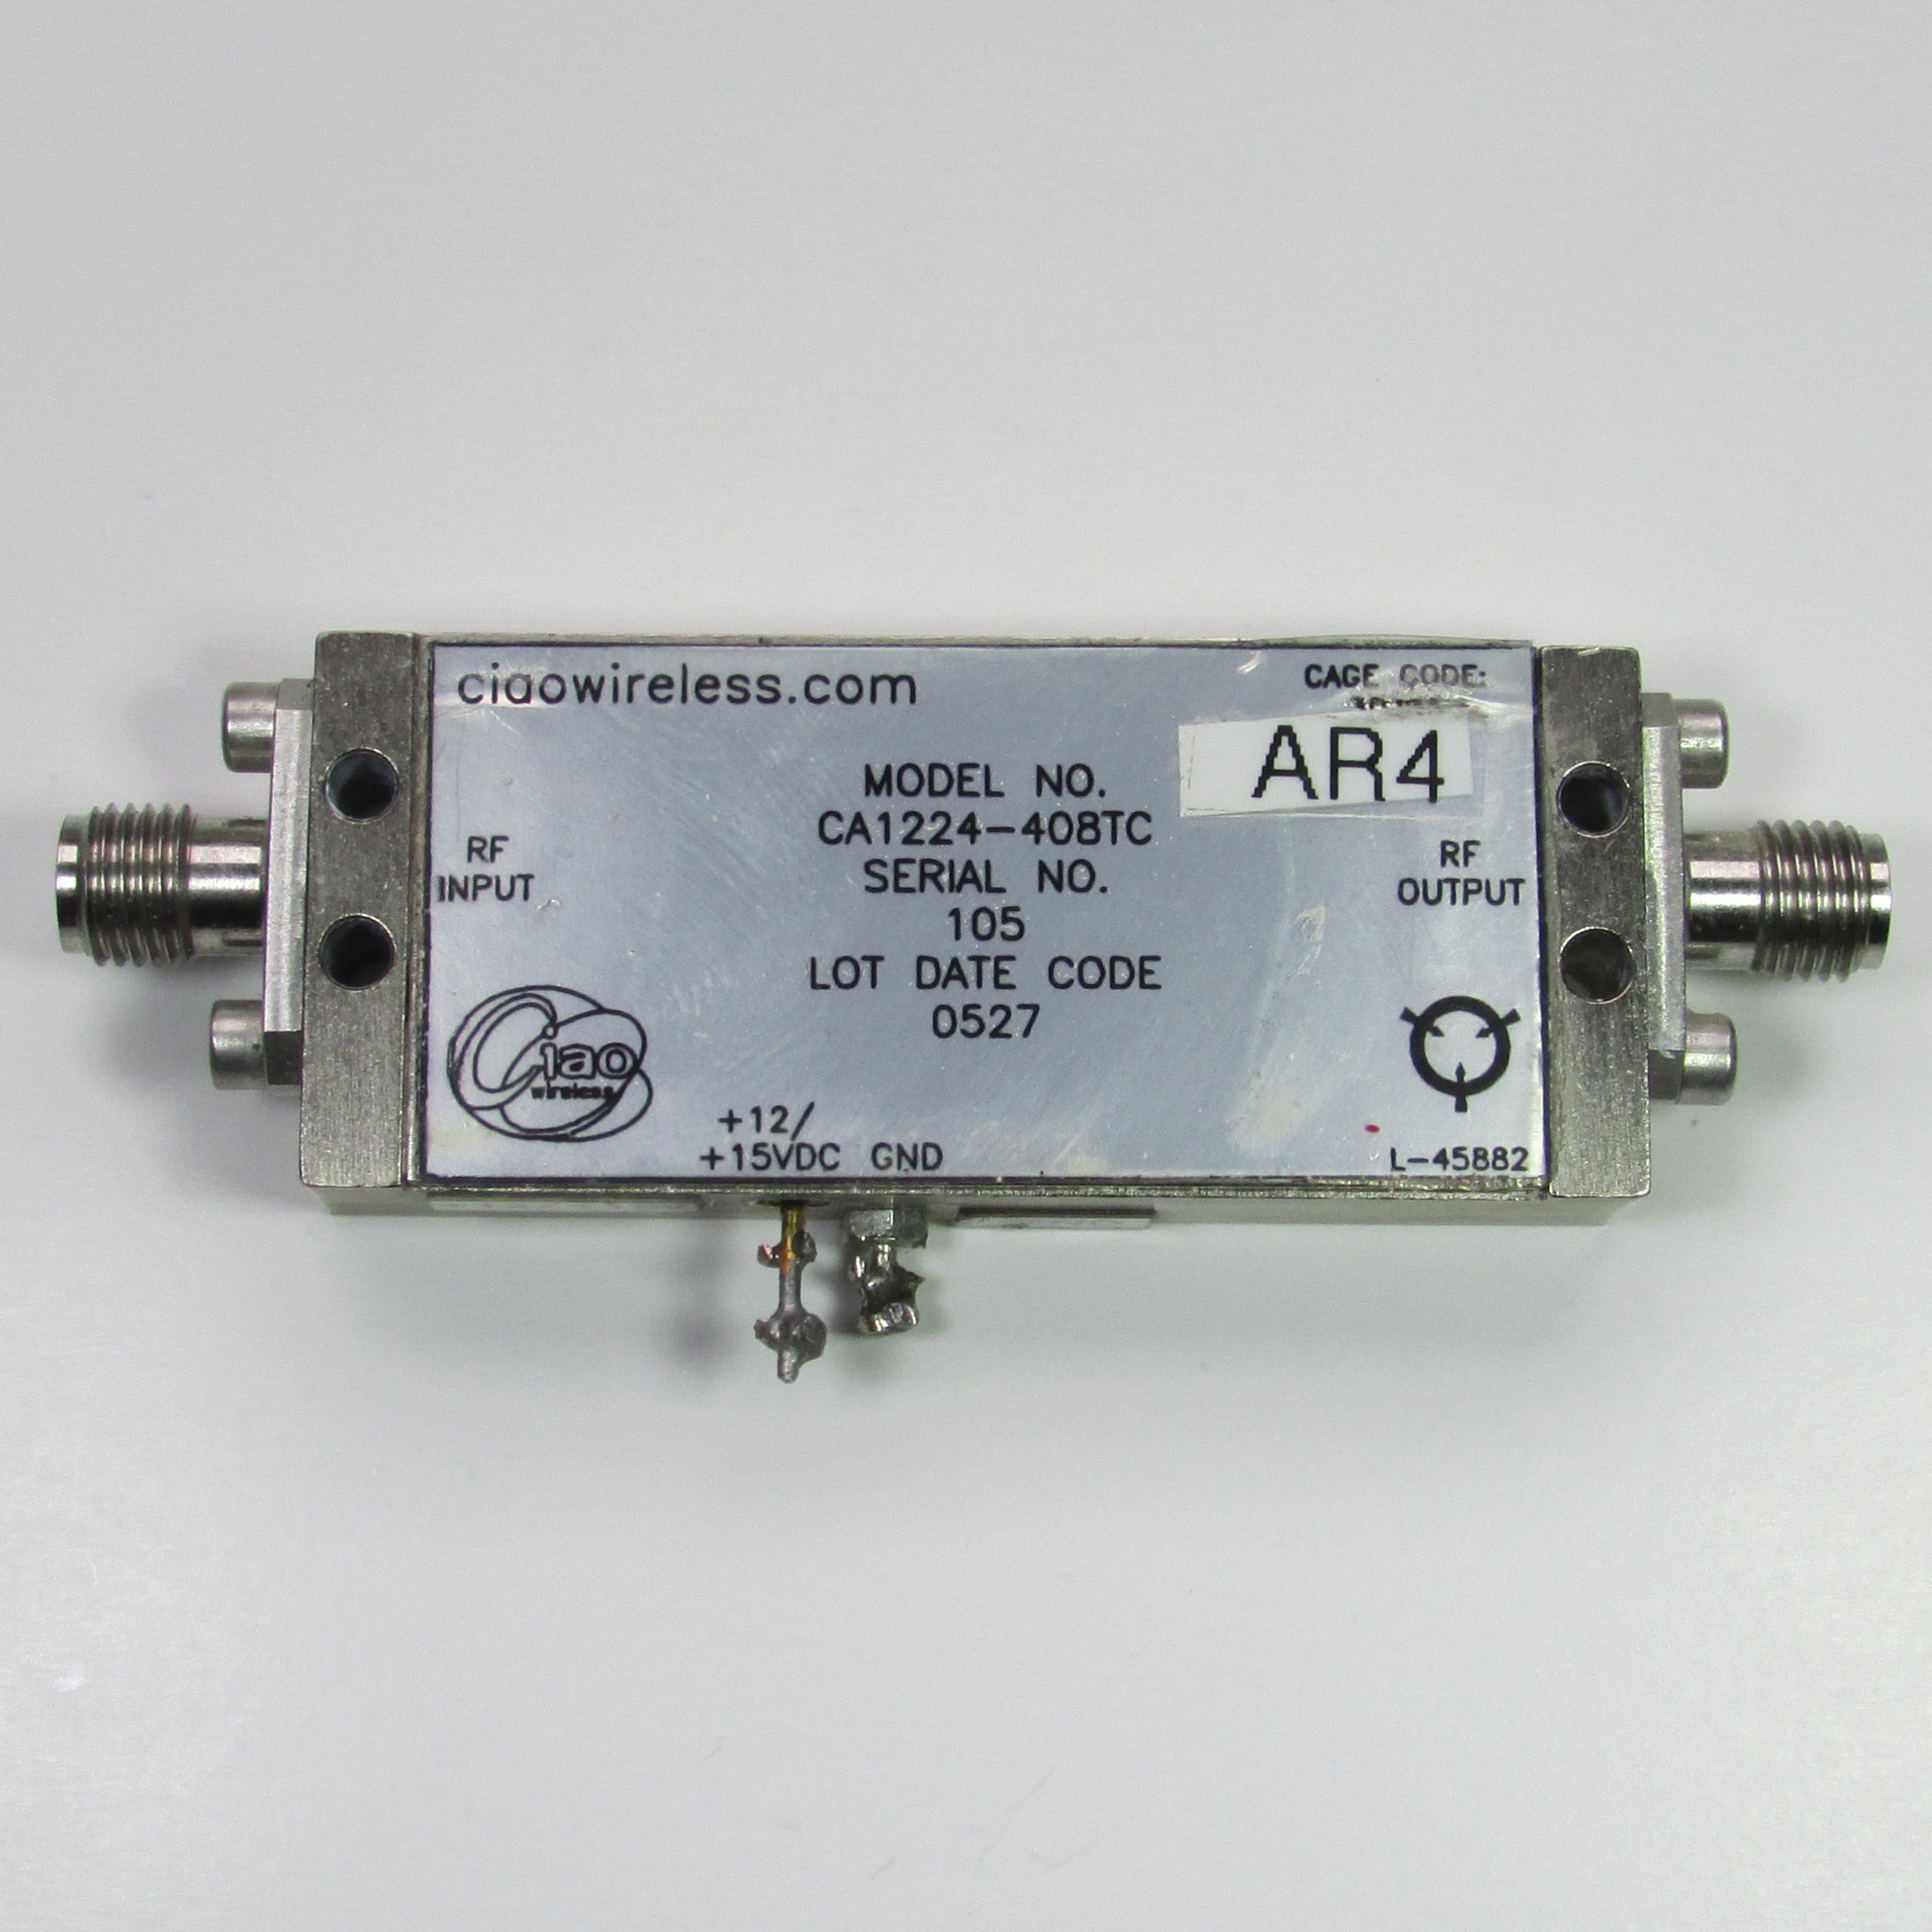 ciaowireless CA1224-408 12-24GHz 22dB 13dBm SMA microwave amplifier